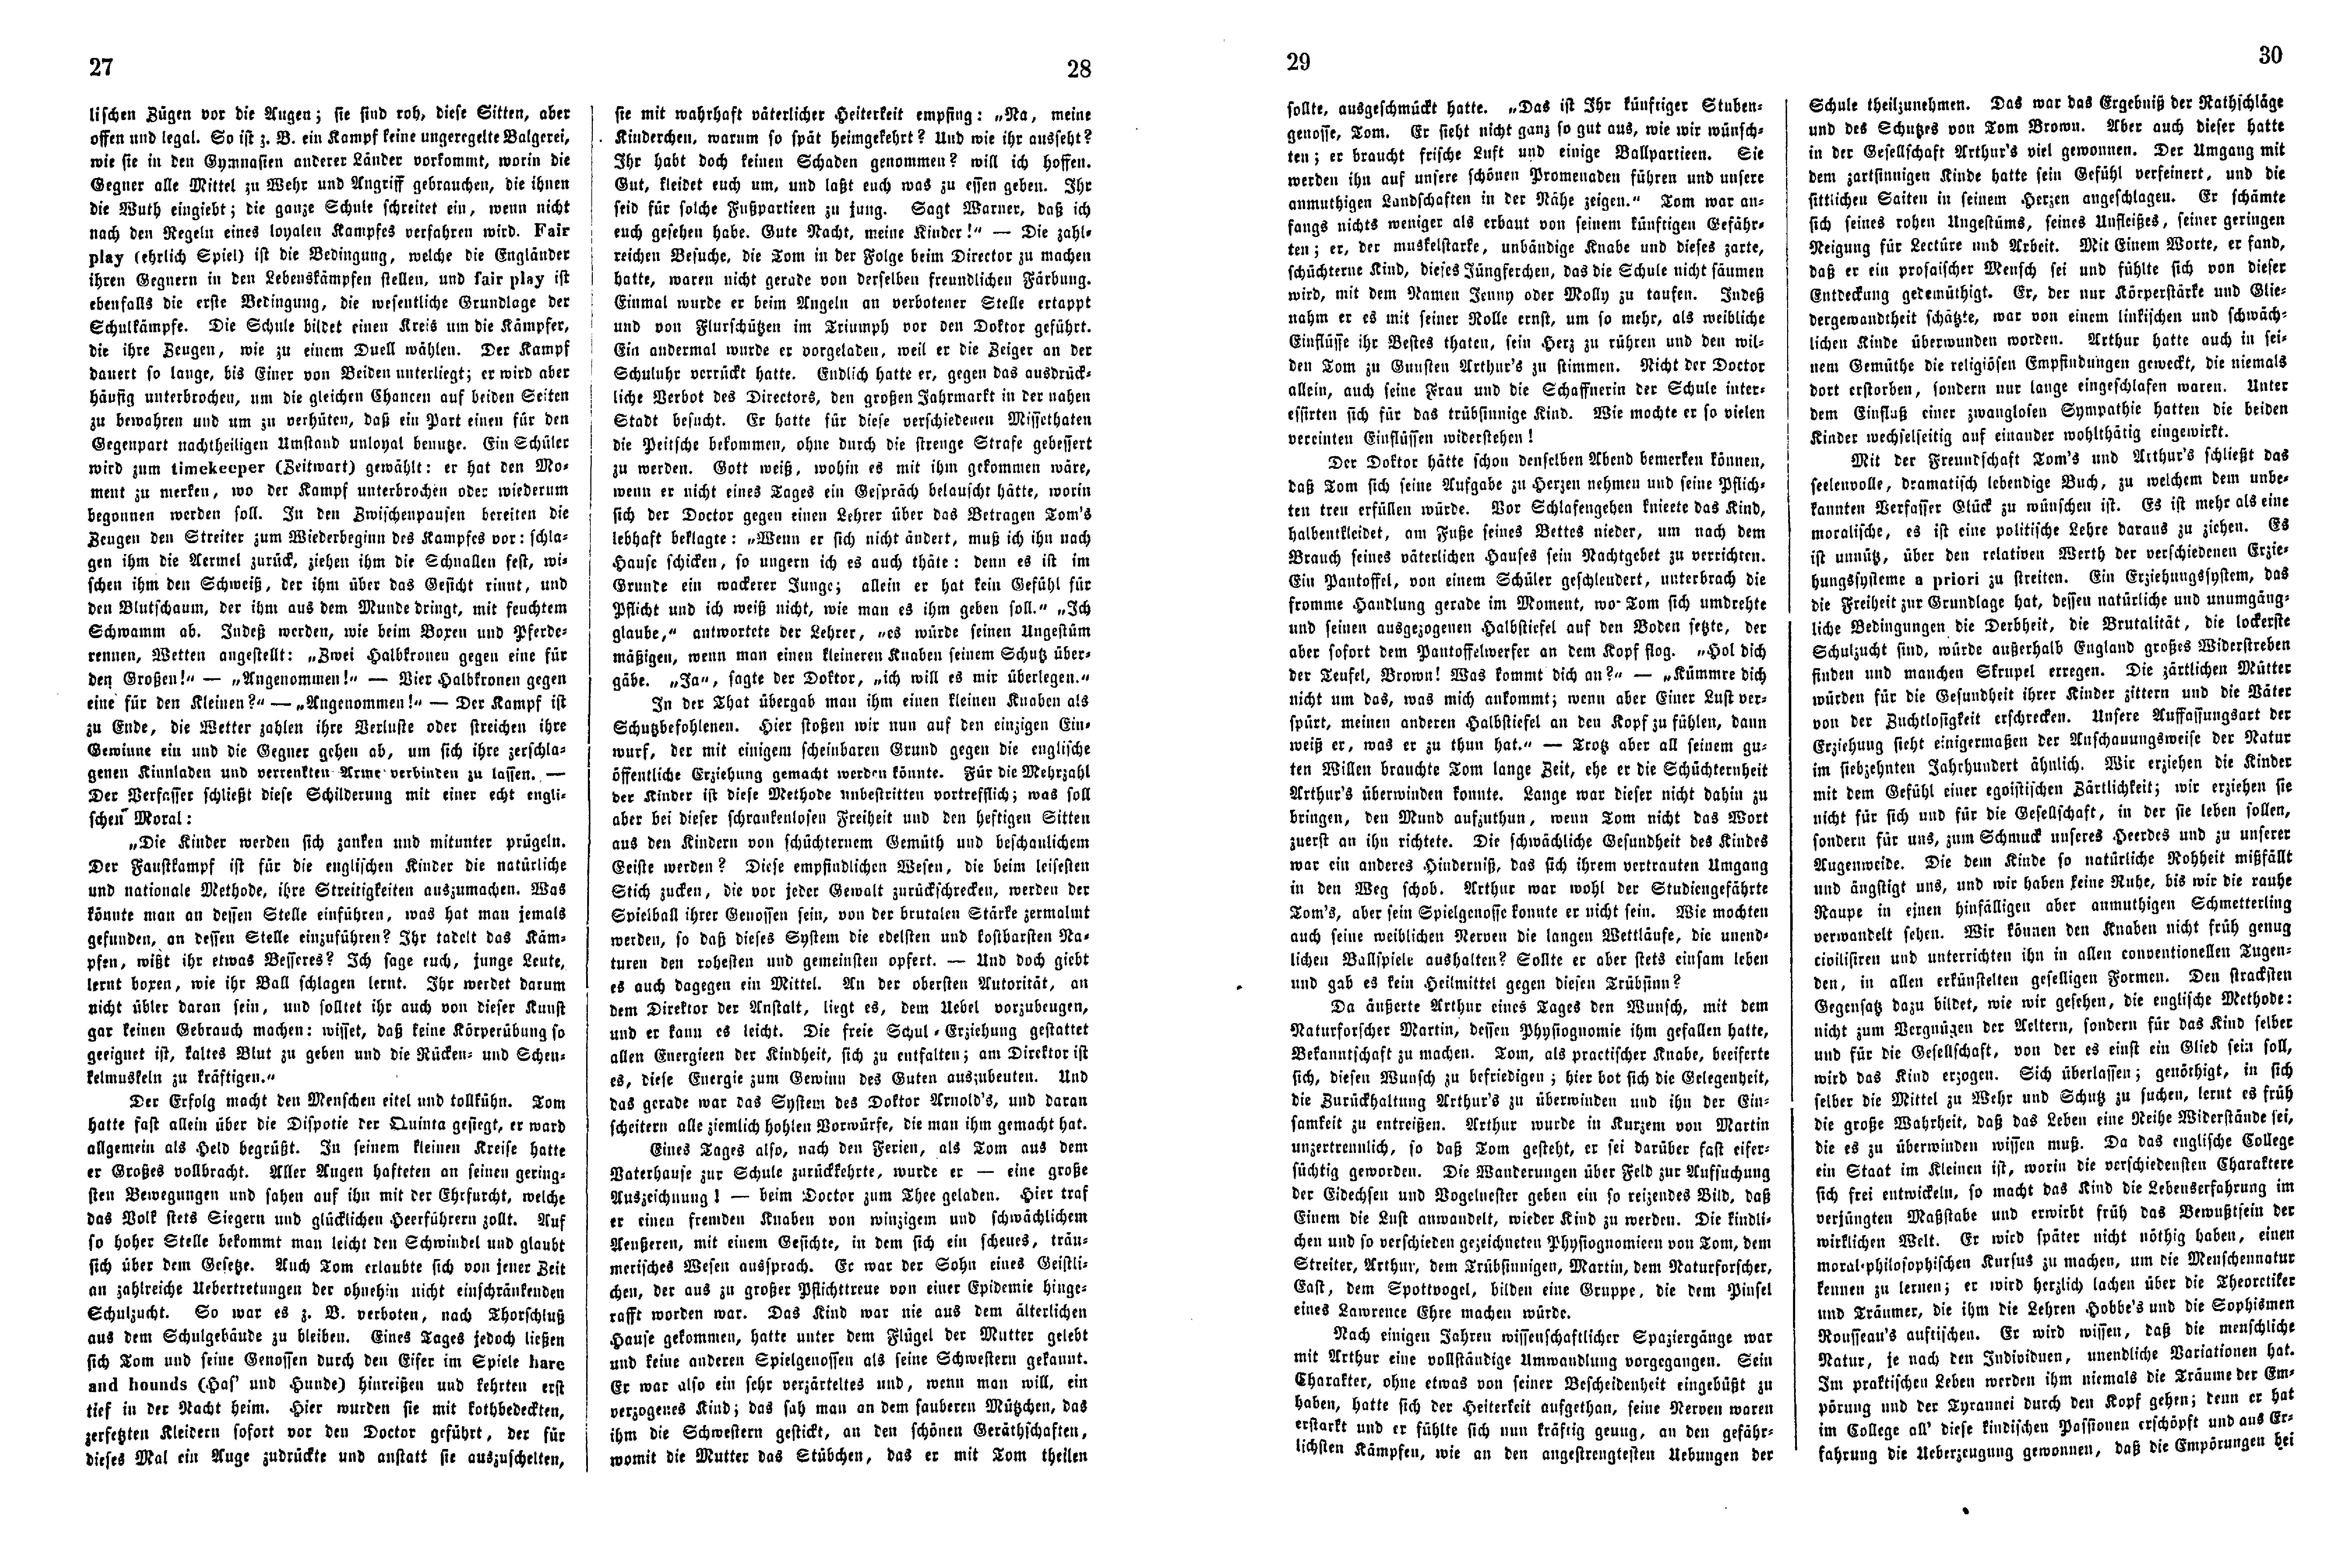 Das Inland [26] (1861) | 11. (27-30) Põhitekst